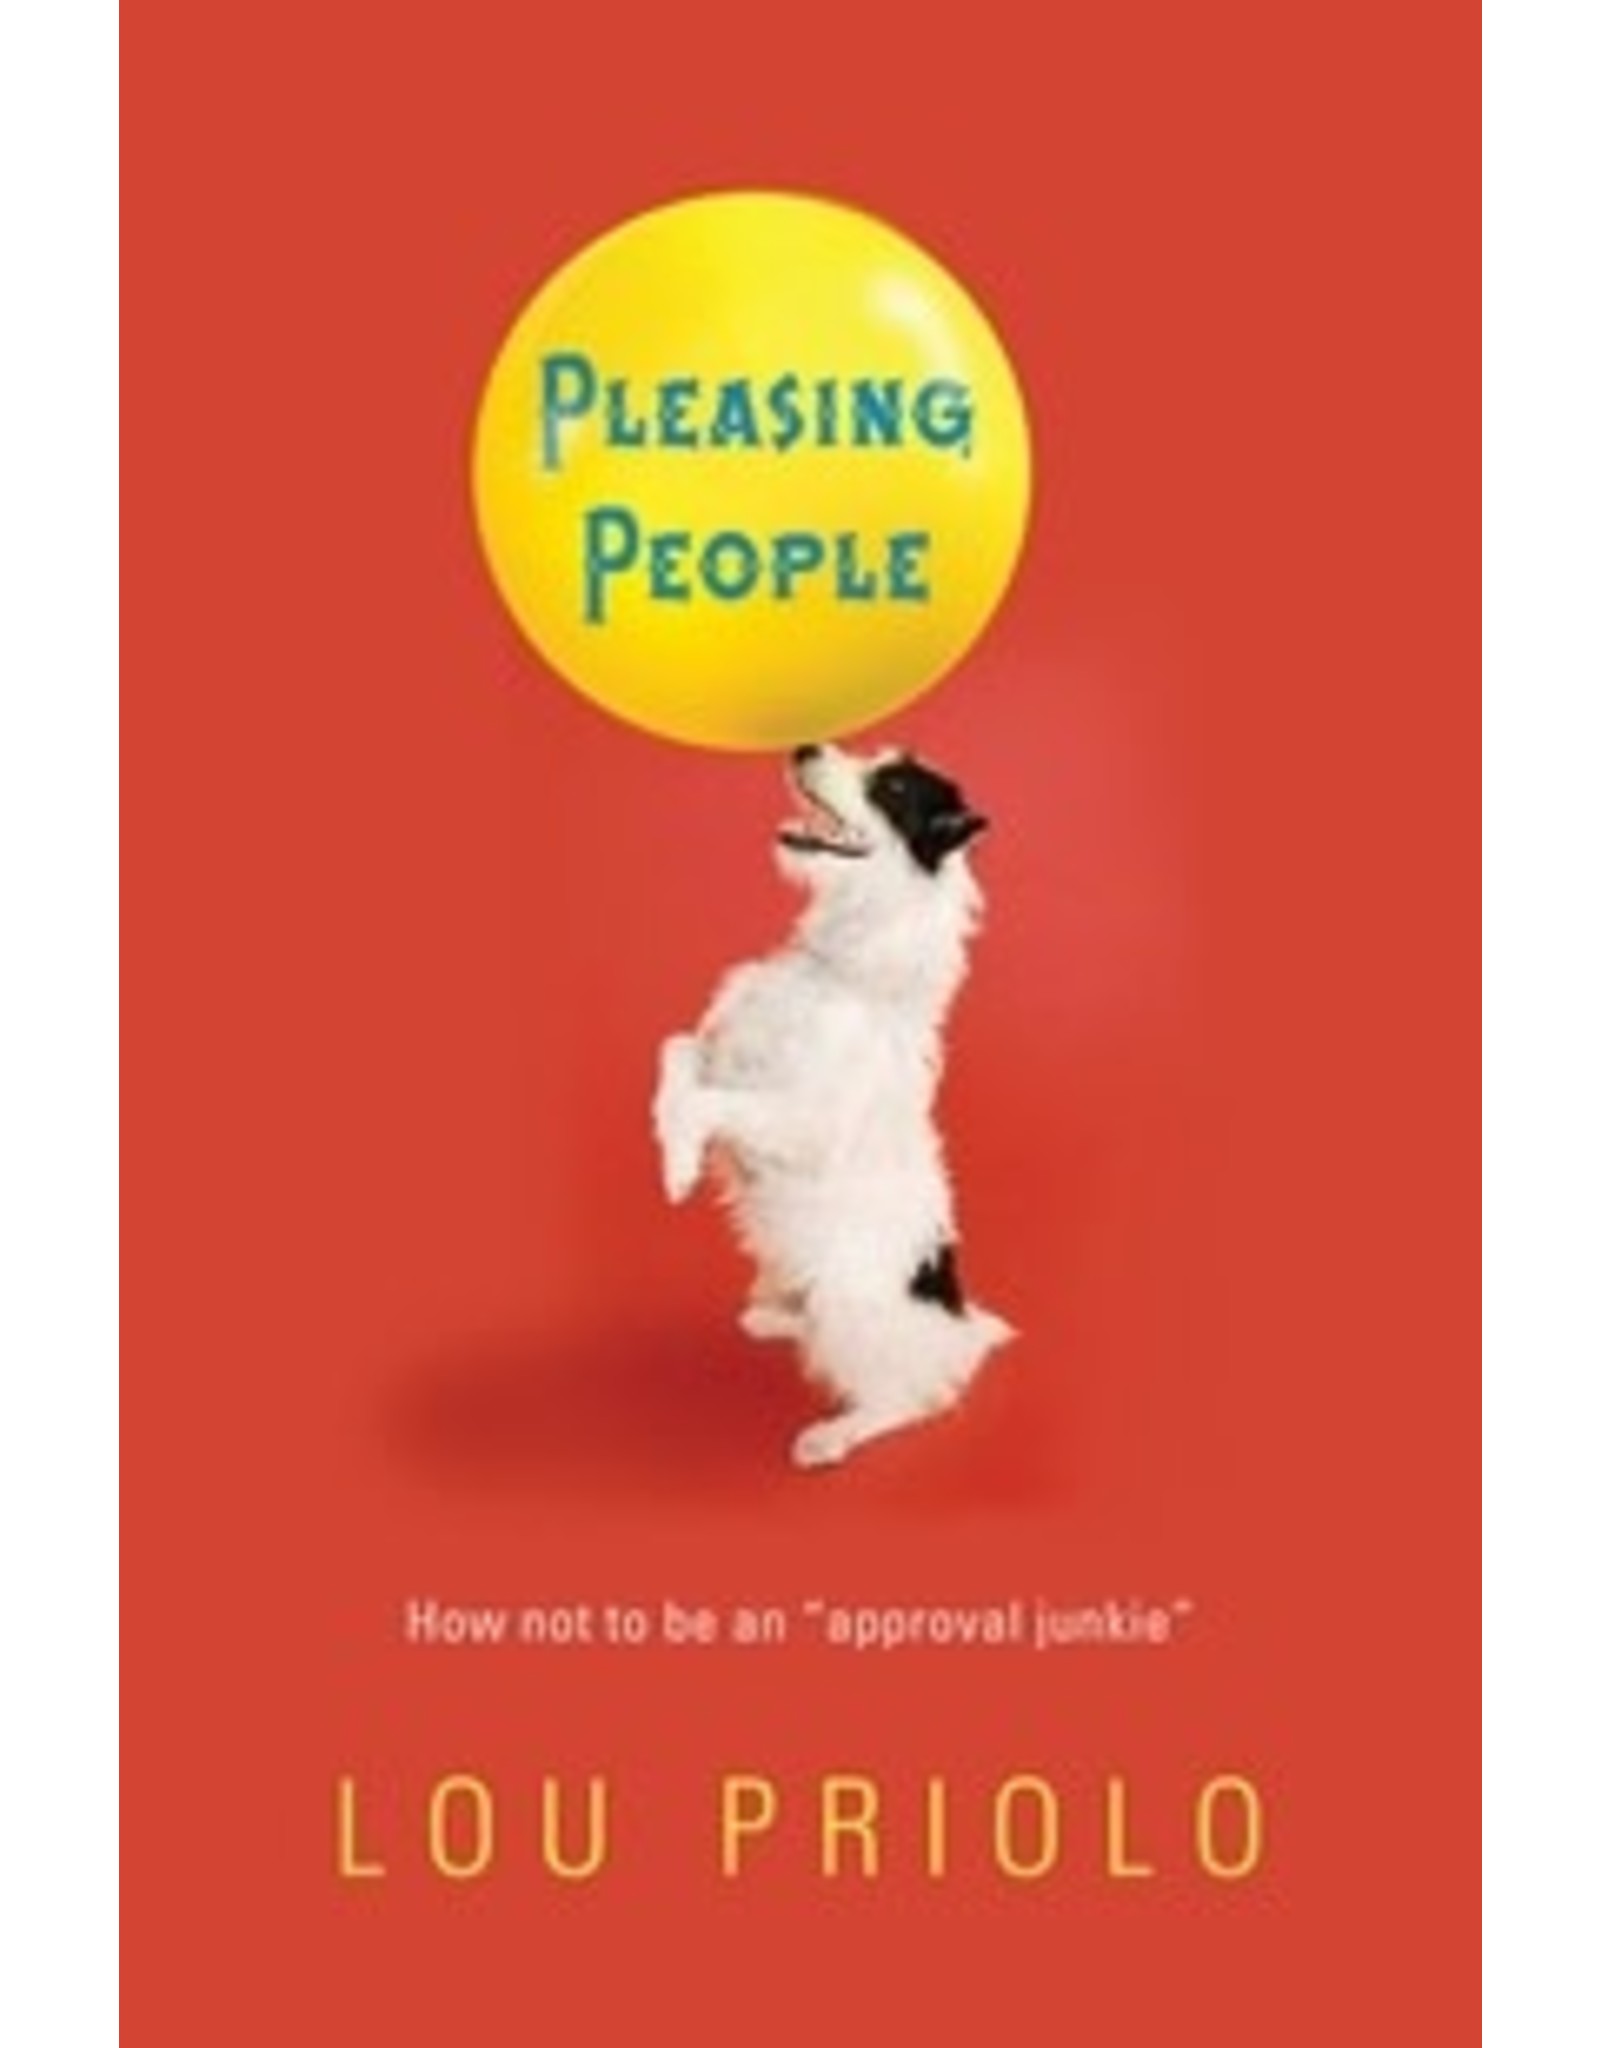 Lou Priolo Pleasing People